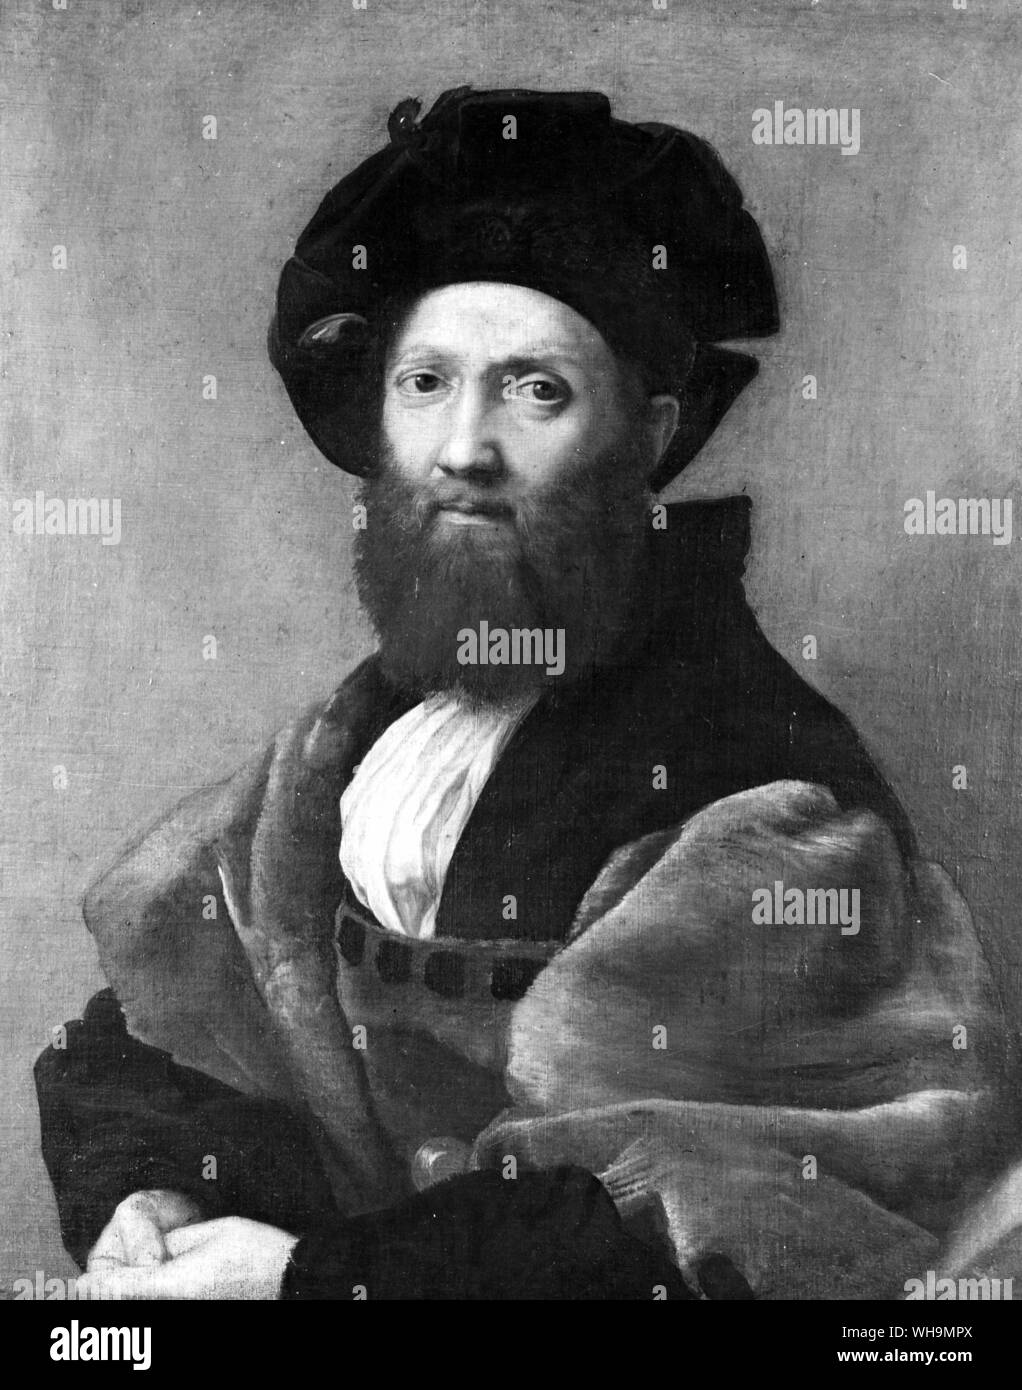 Count (Baldassare o Baltasar Castiglione) (1478-1529). Autor Italiano y diplomático por Rafael. Foto de stock